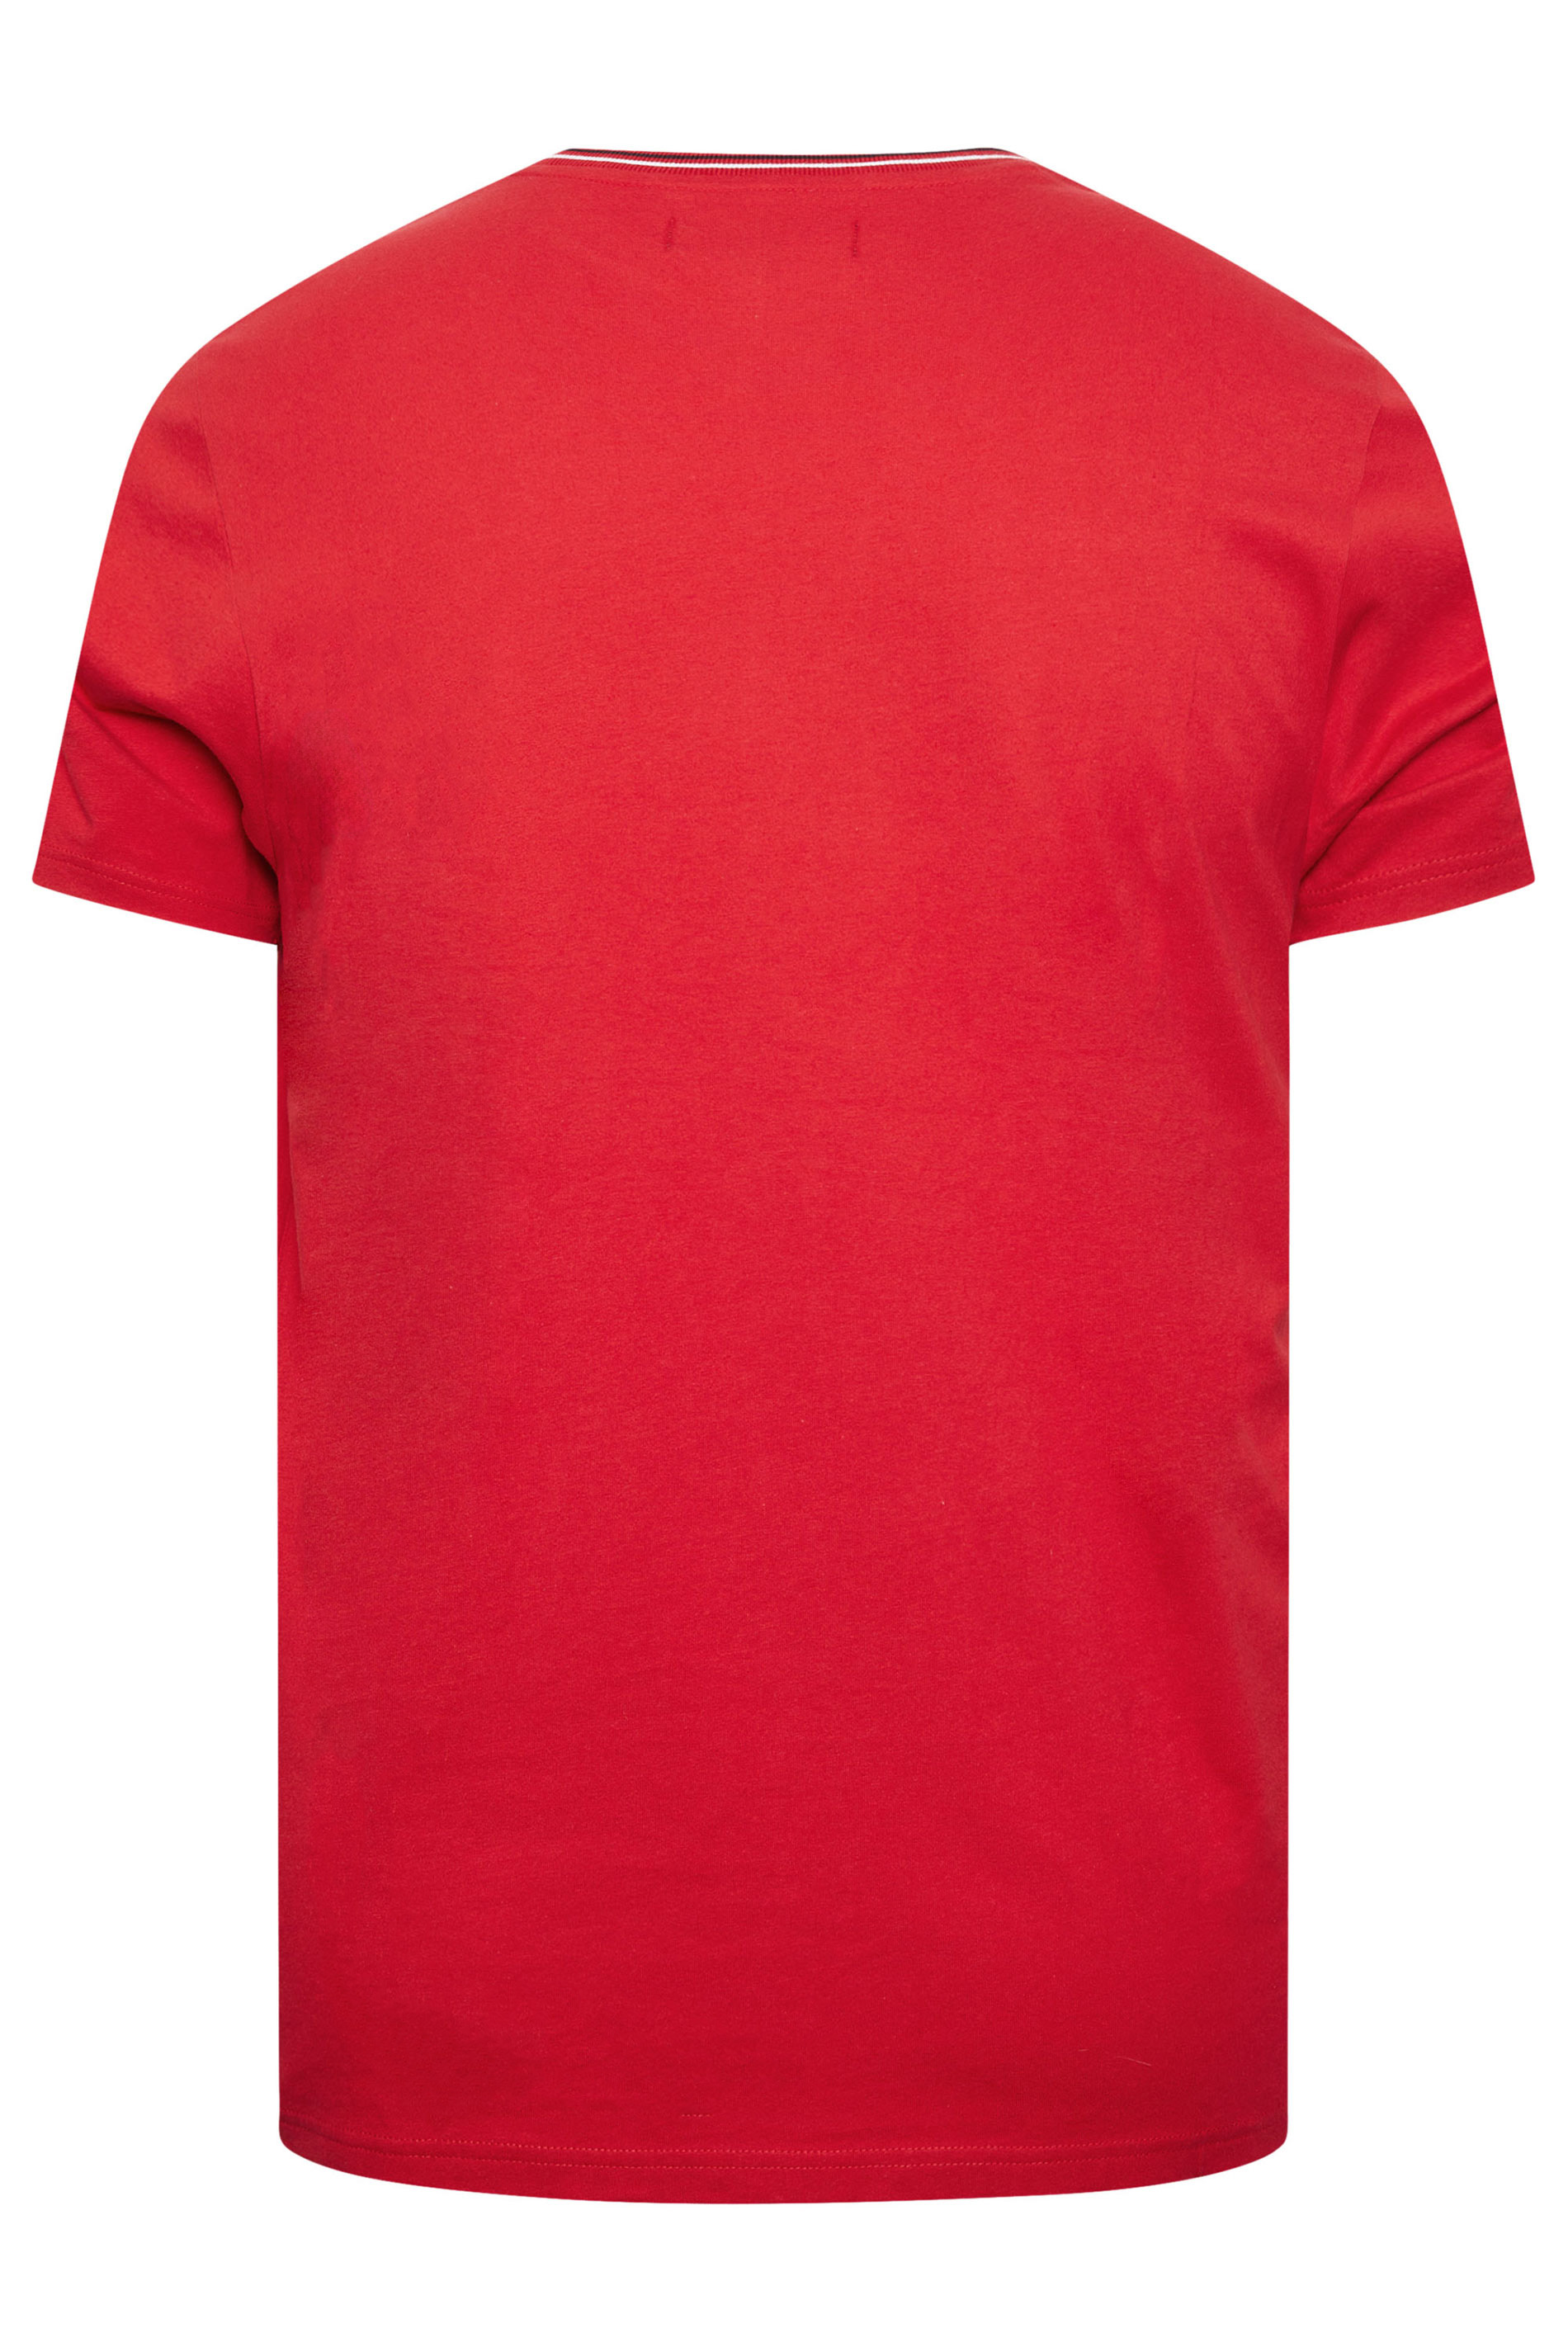 BadRhino Big & Tall Red & White Chest Stripe T-Shirt | BadRhino 3